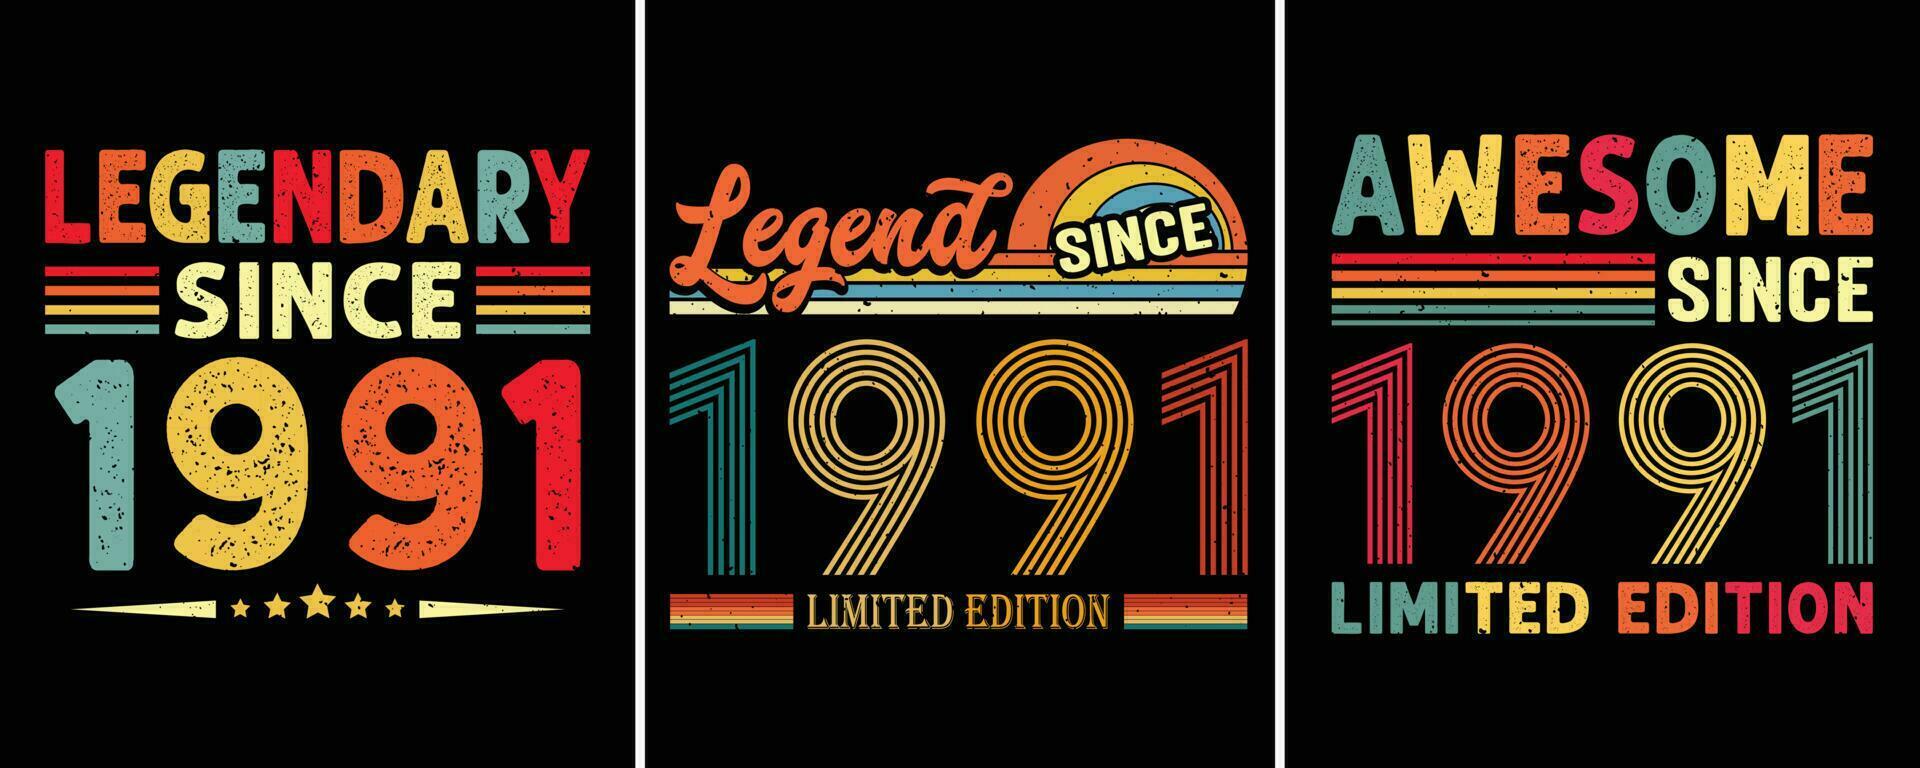 legendary eftersom 1991, legend eftersom 1991 begränsad utgåva, grymt bra eftersom 1991 begränsad utgåva, t-shirt design för födelsedag gåva, födelsedag citat design vektor